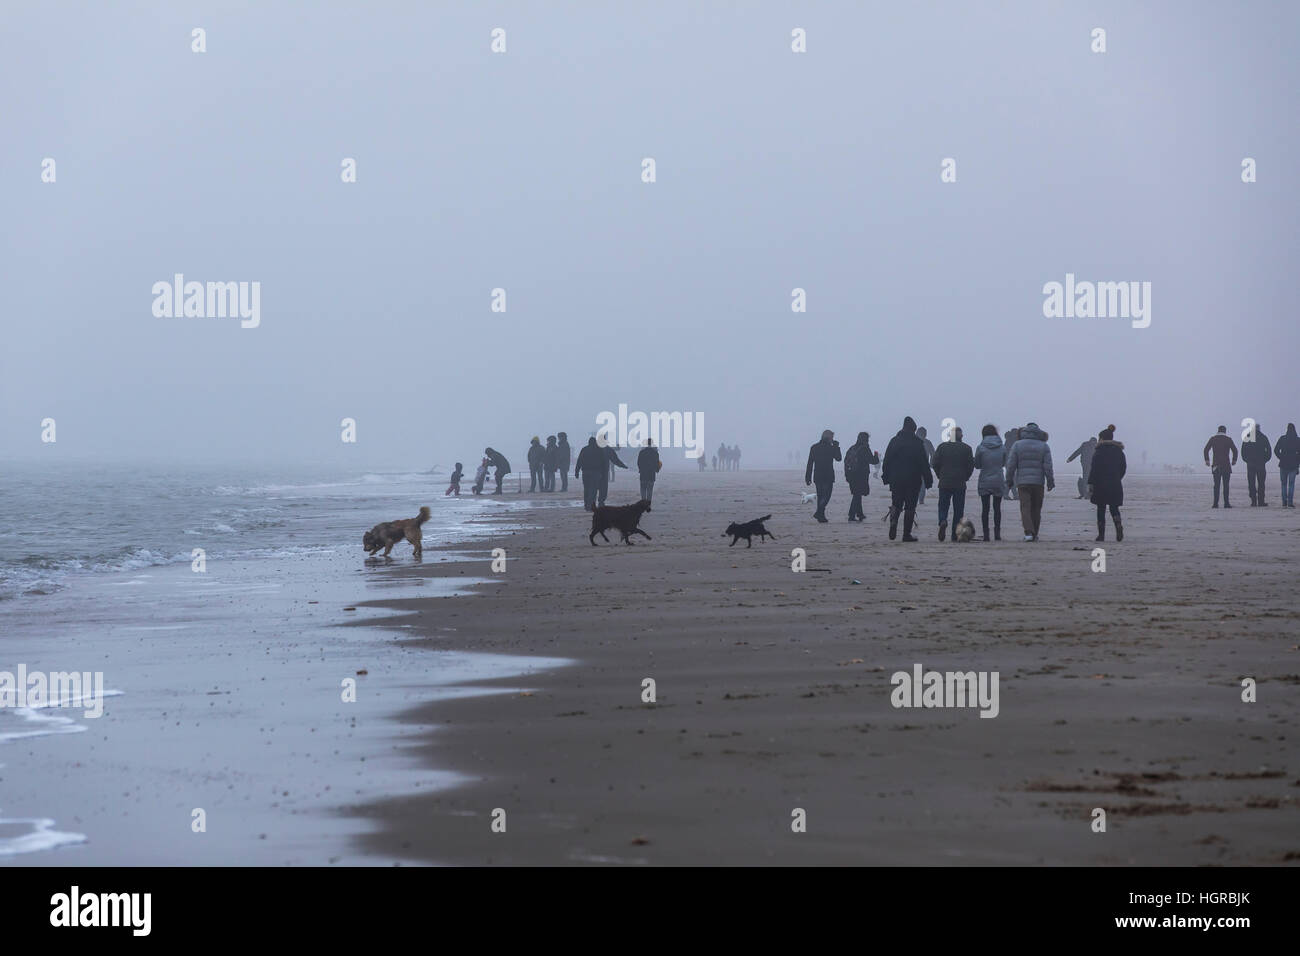 Spaziergänger am Strand in der Nähe von Bergen Aan Zee, Noord-Holland, Winter, Nebel, spazieren gehen Stockfoto